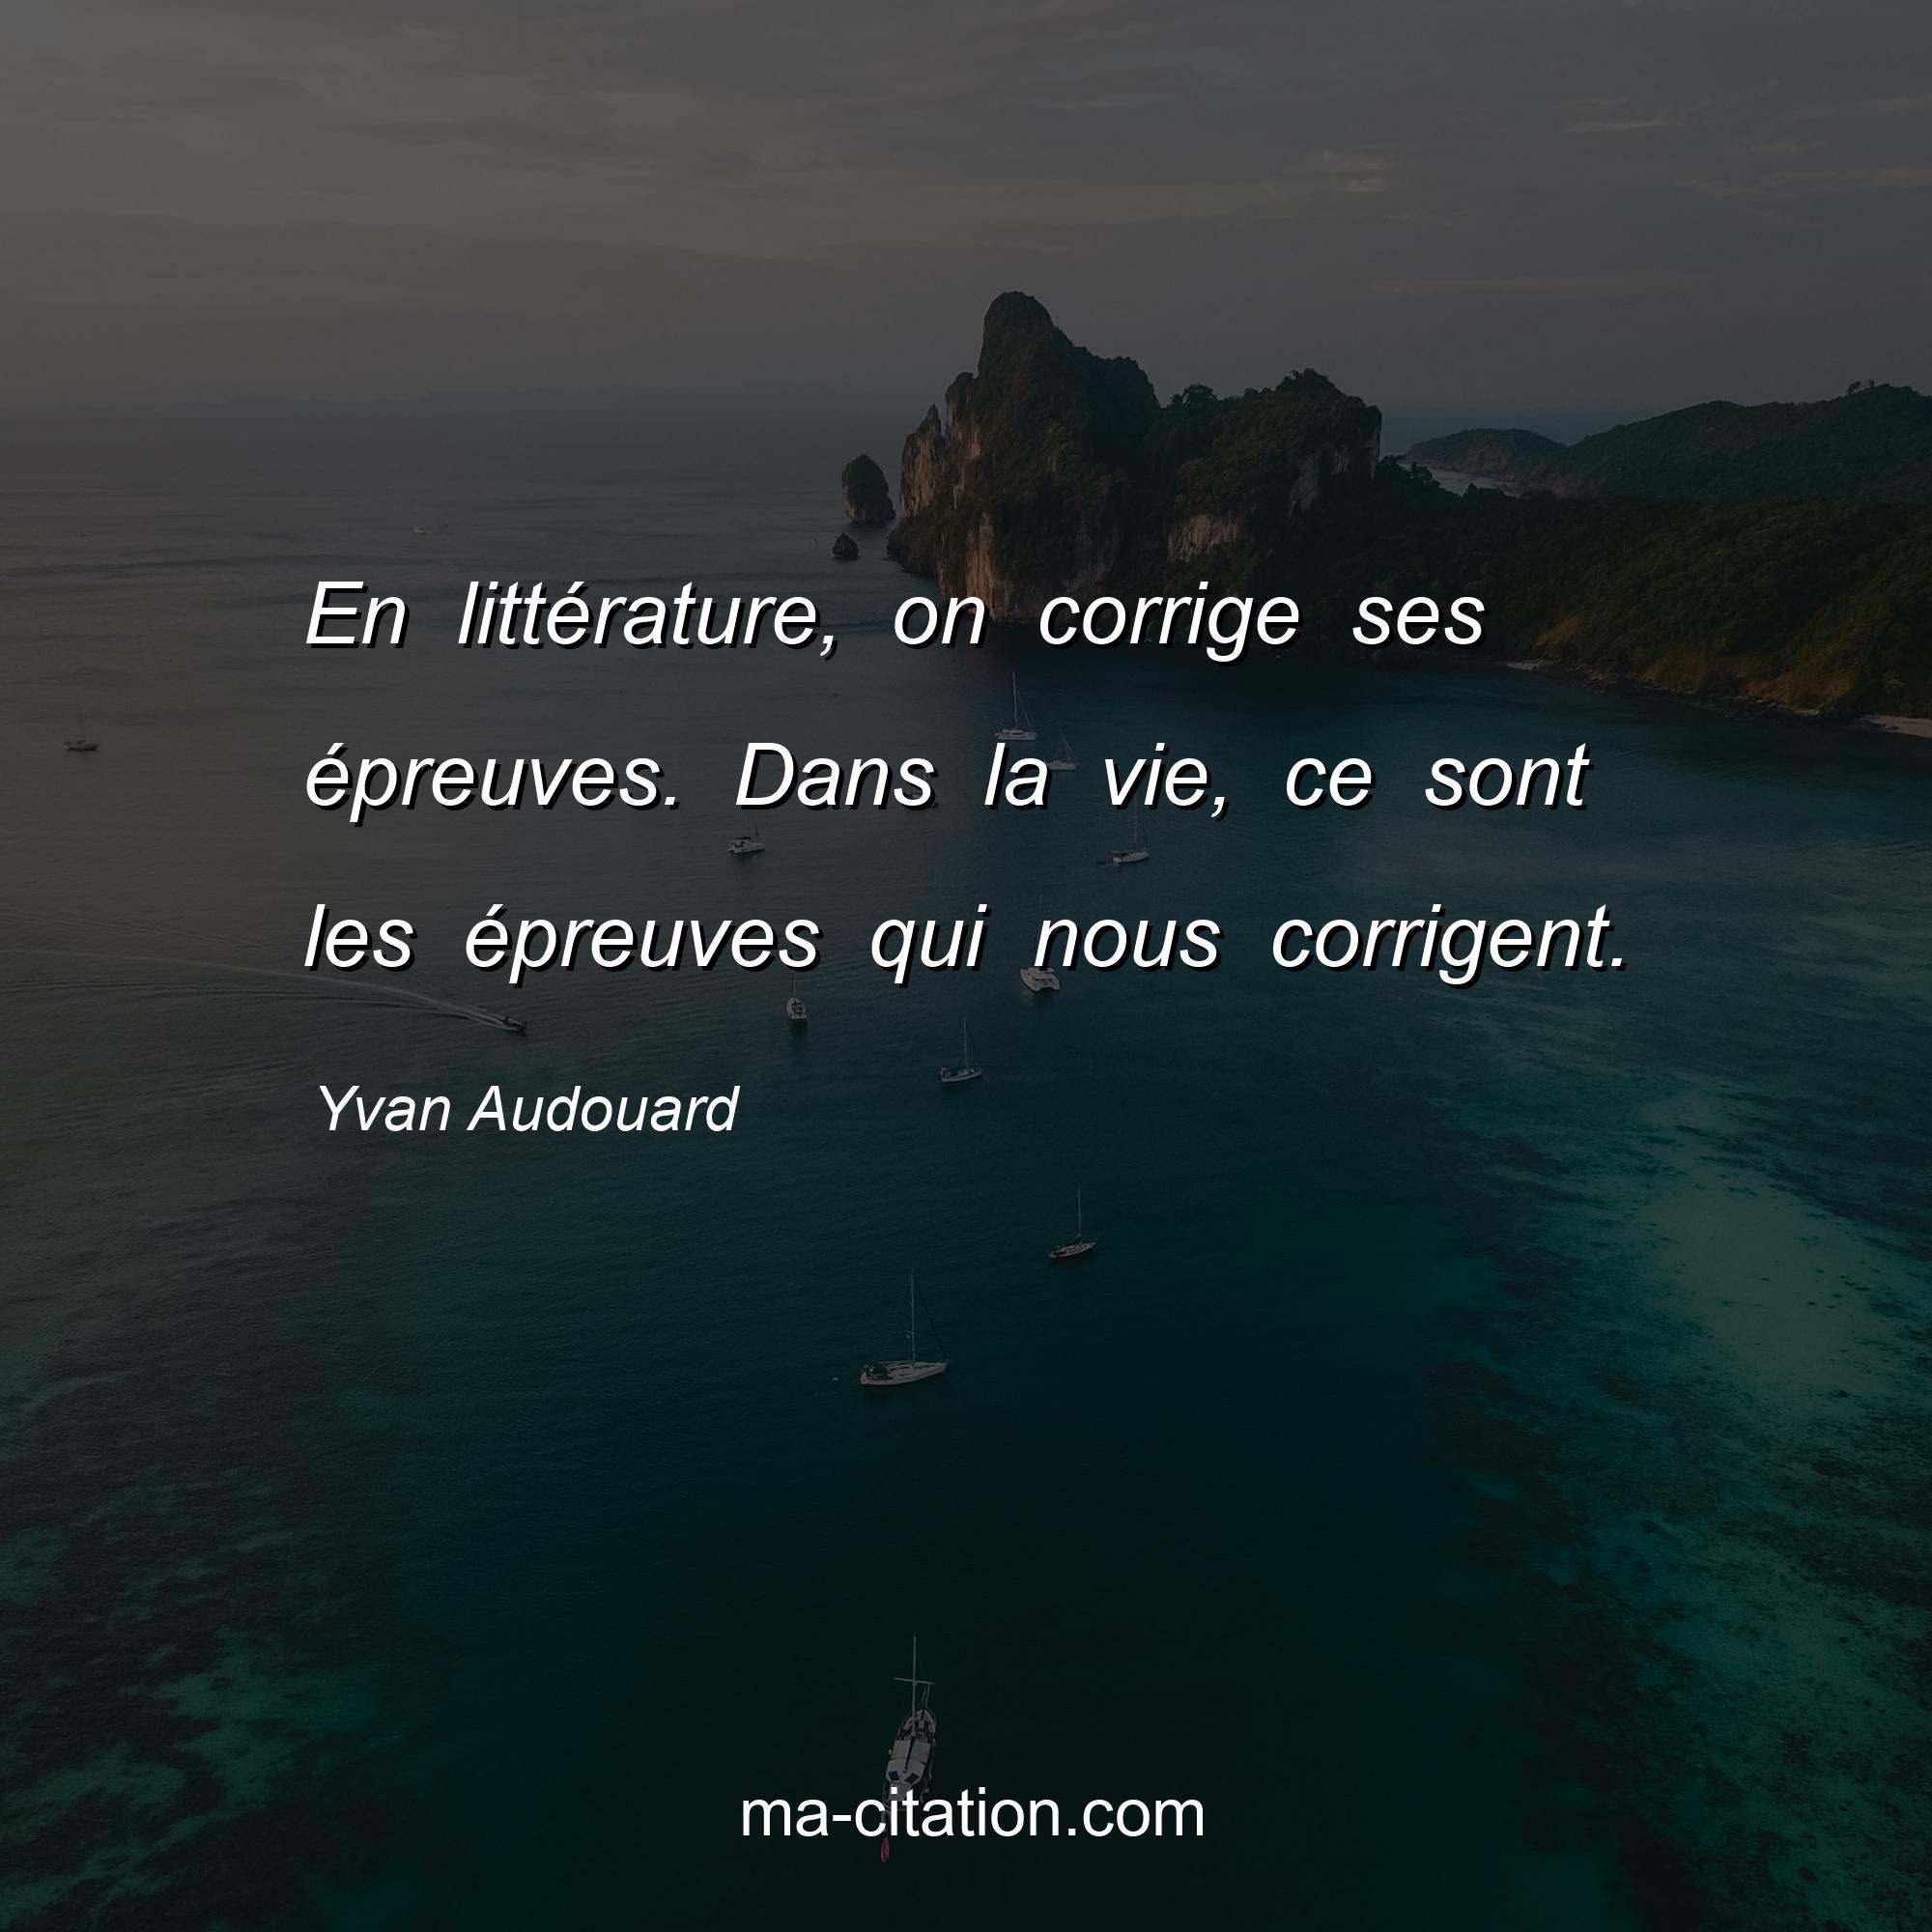 Yvan Audouard : En littérature, on corrige ses épreuves. Dans la vie, ce sont les épreuves qui nous corrigent.